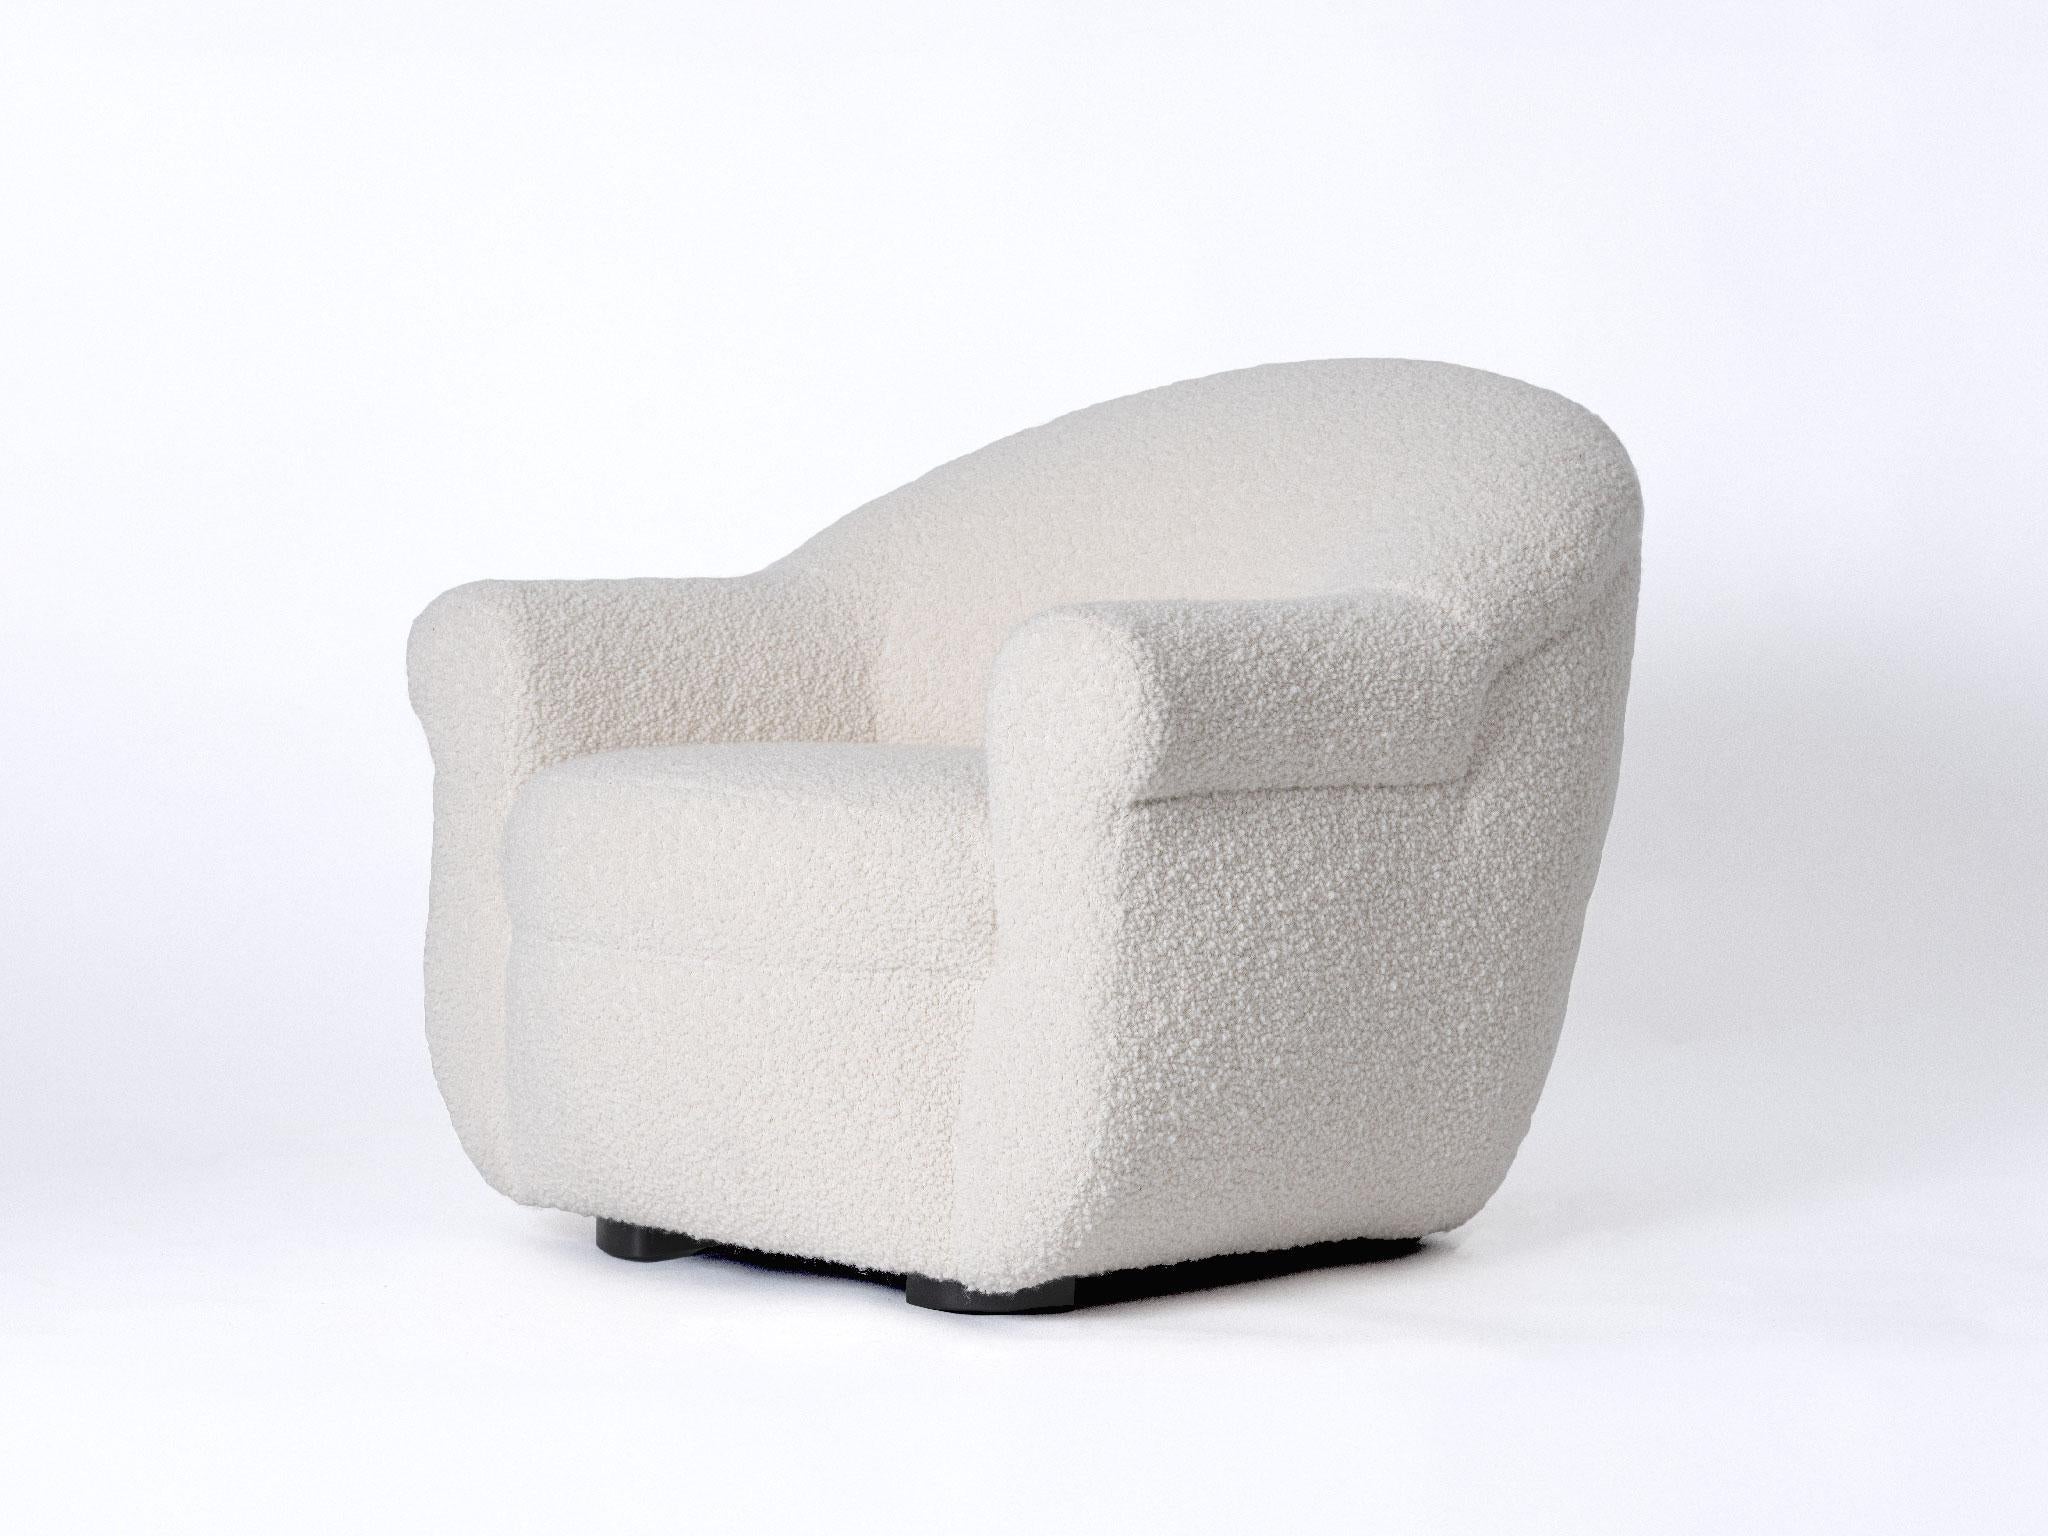 Der Sessel BERGERE ist ein zeitloser und skulpturaler Einstieg, der sich durch seine anmutigen Linien und einladenden Proportionen auszeichnet. Plüschboucle verleiht dem niedrigen Profil dieses Sessels eine sanfte Hand.